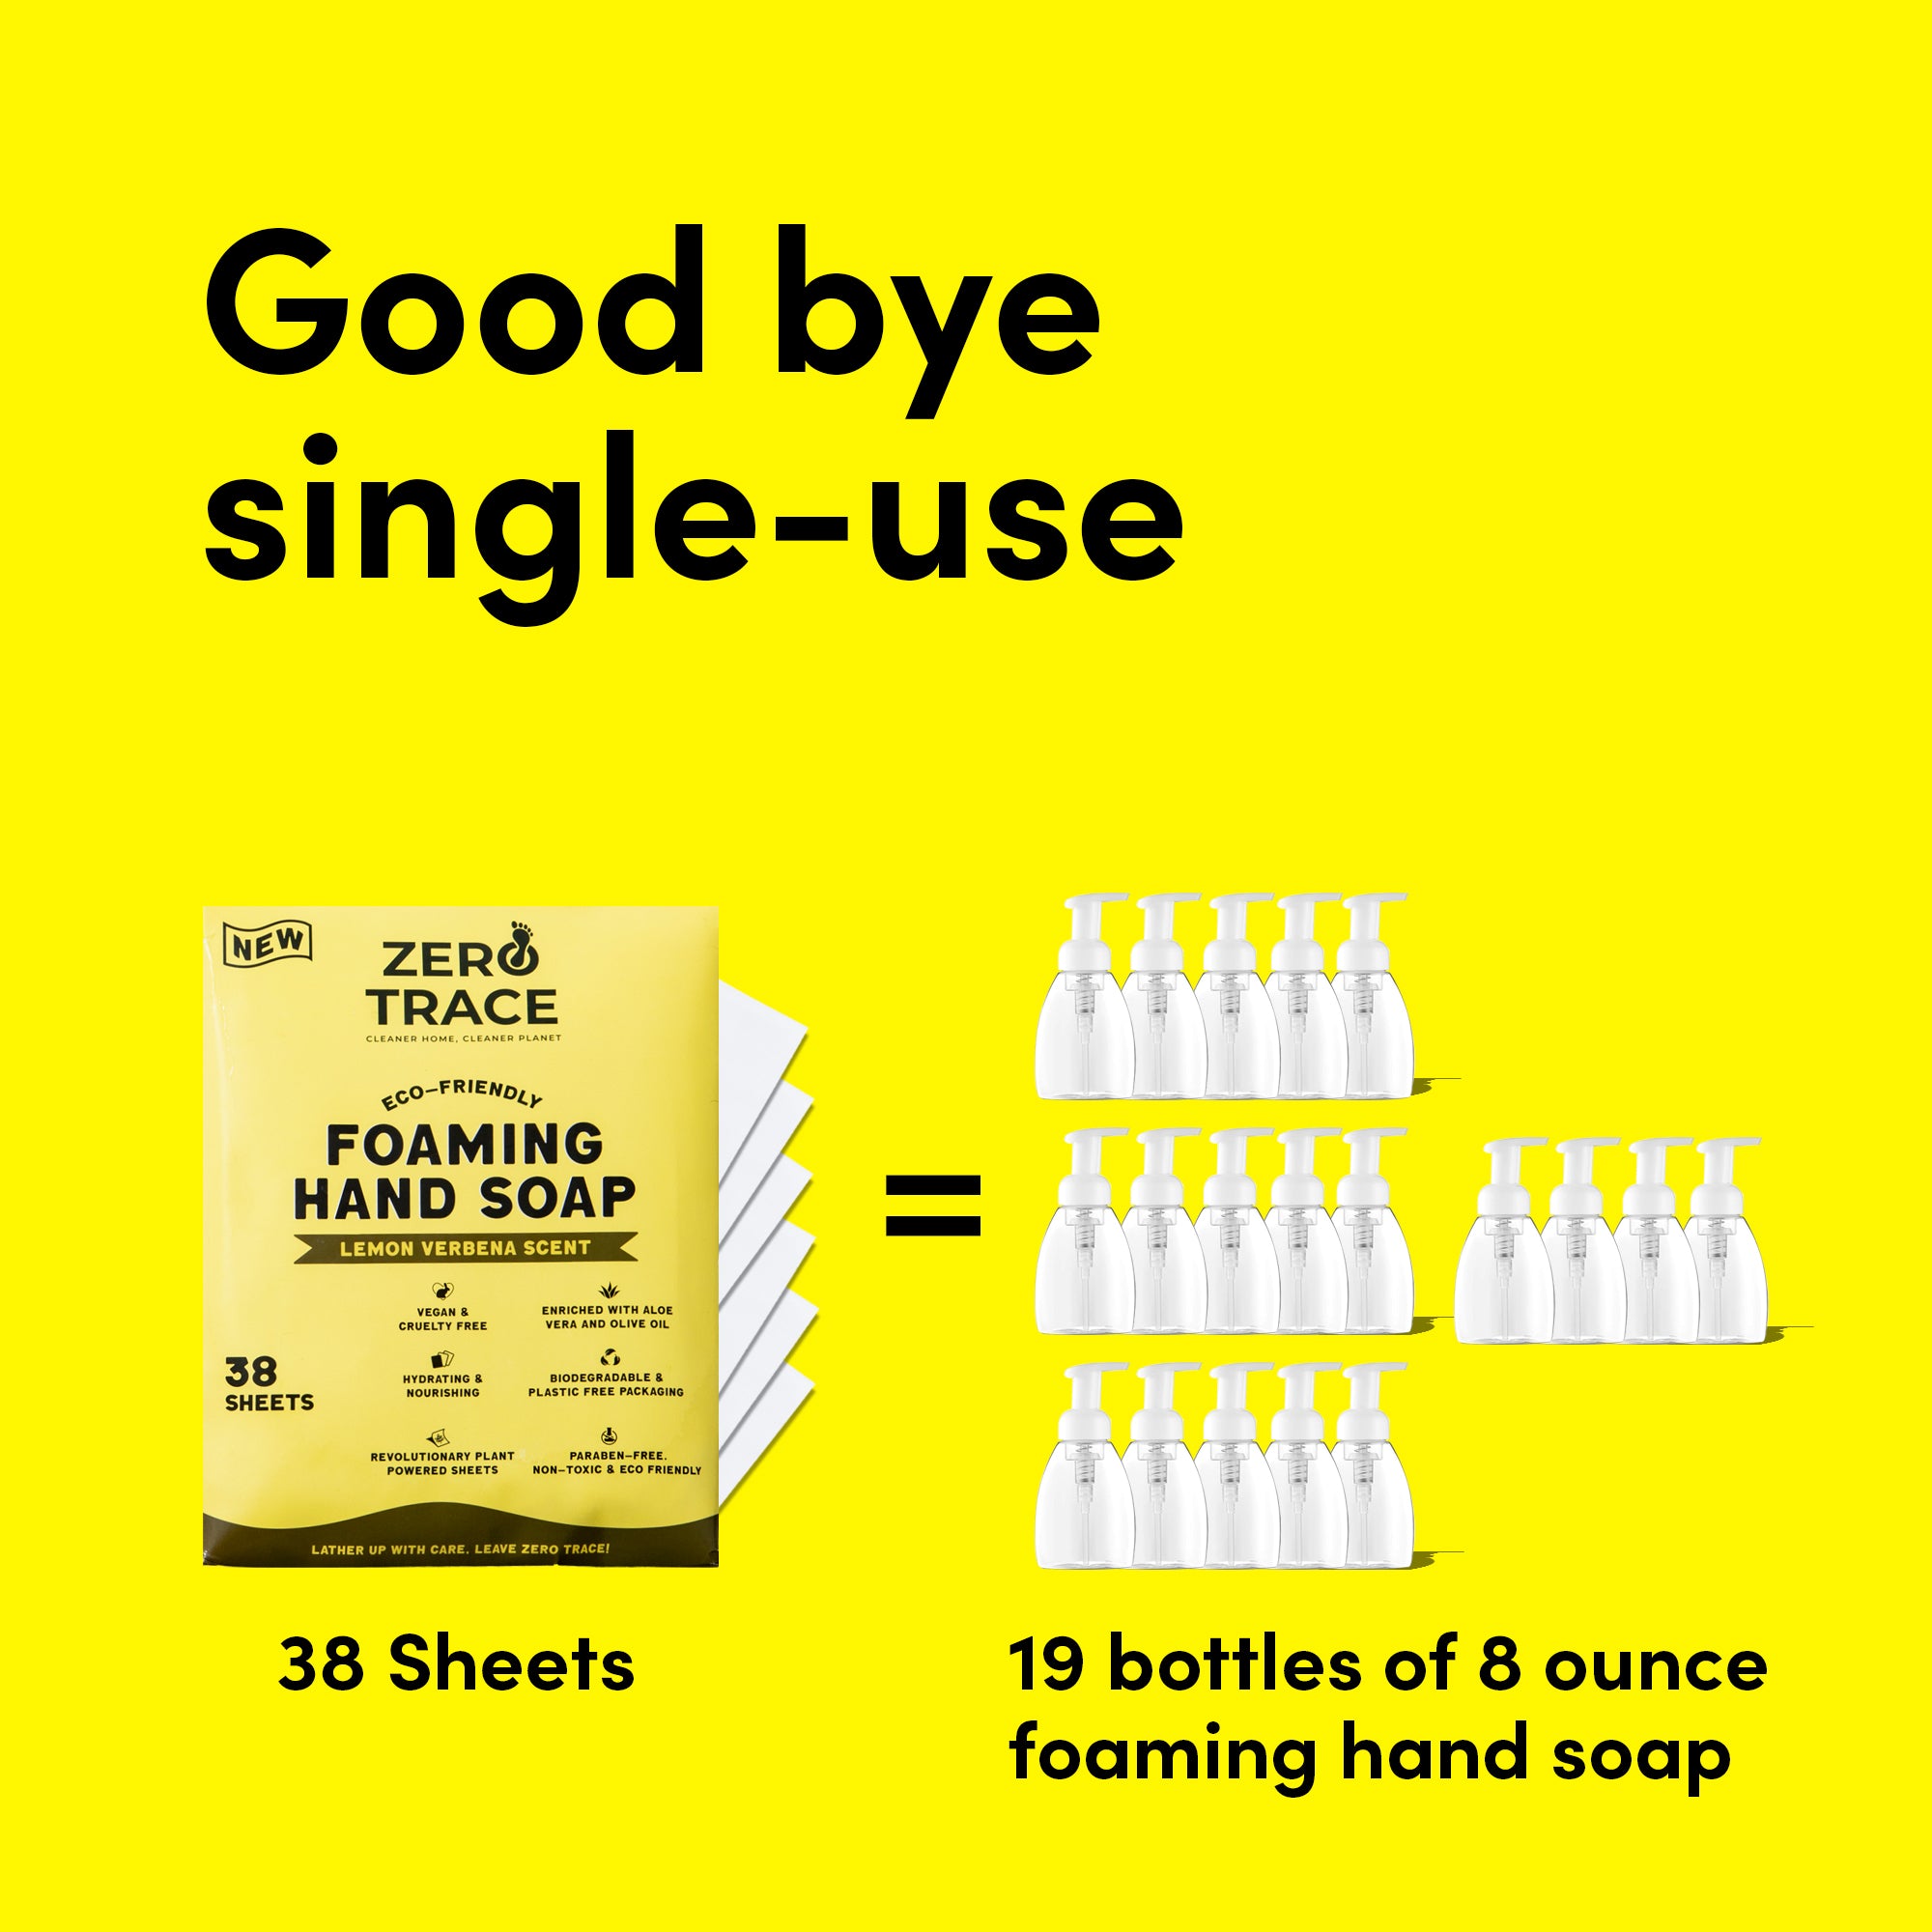 Goodbye Zero Trace single-use foaming hand soap, hello eco-friendly sheets.